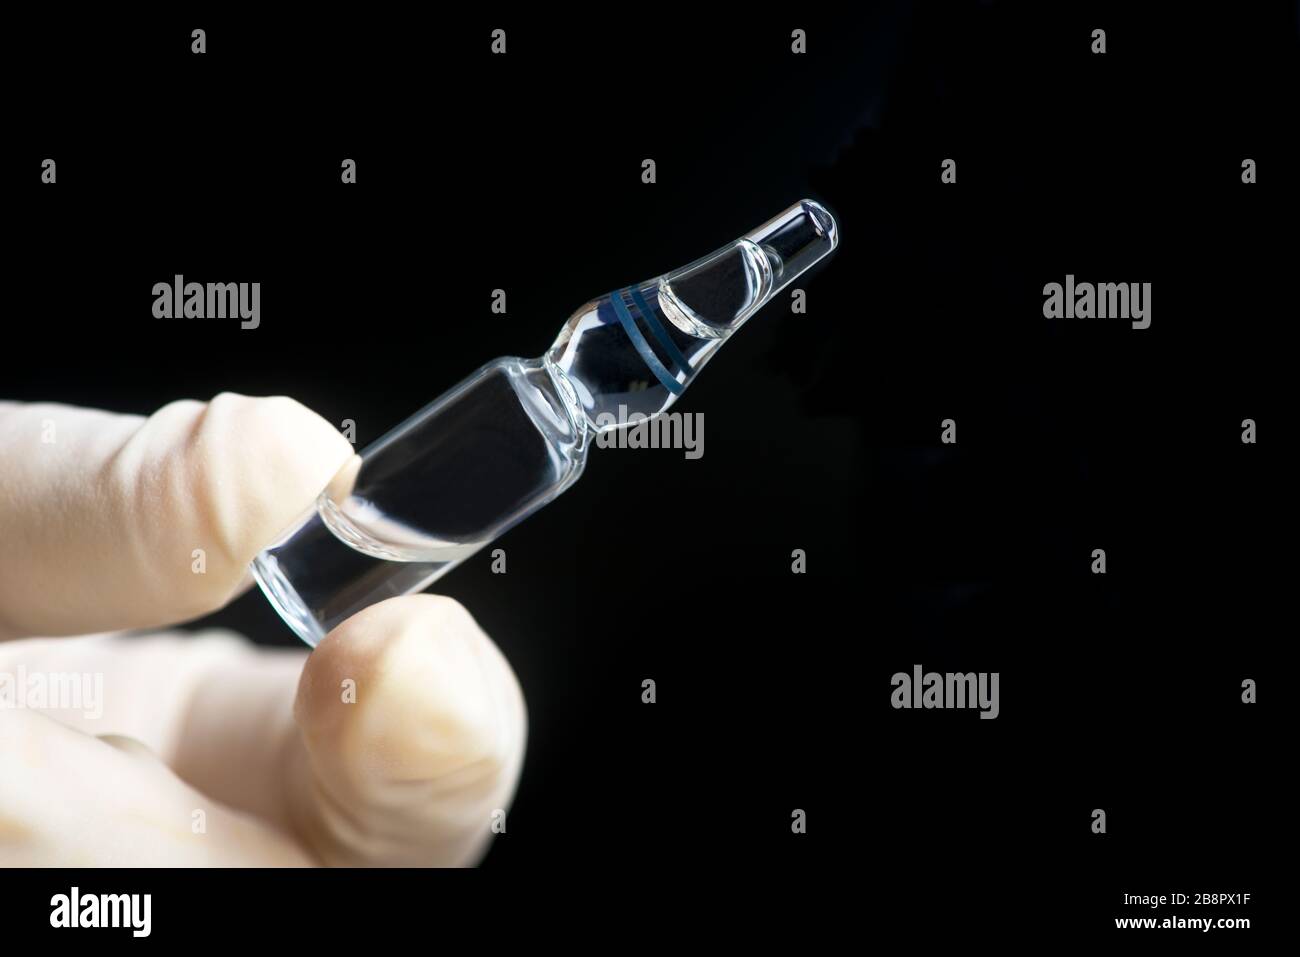 Glaskampule von Medikamenten, die von der Handschuhhand auf schwarzem Hintergrund gehalten werden. Stockfoto